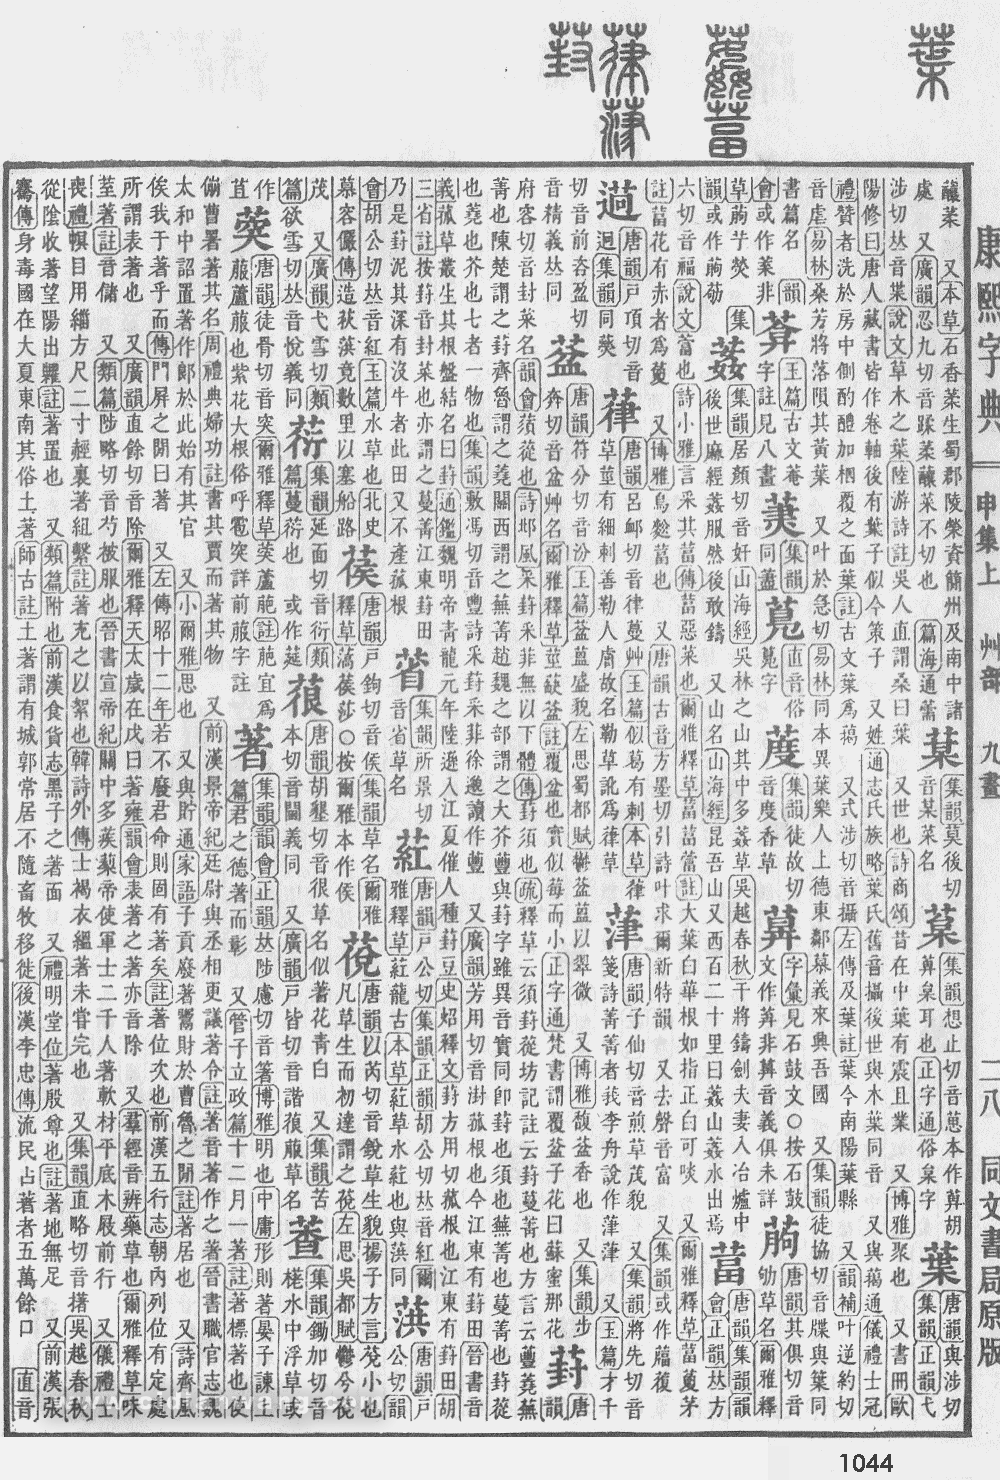 康熙字典掃描版第1044頁